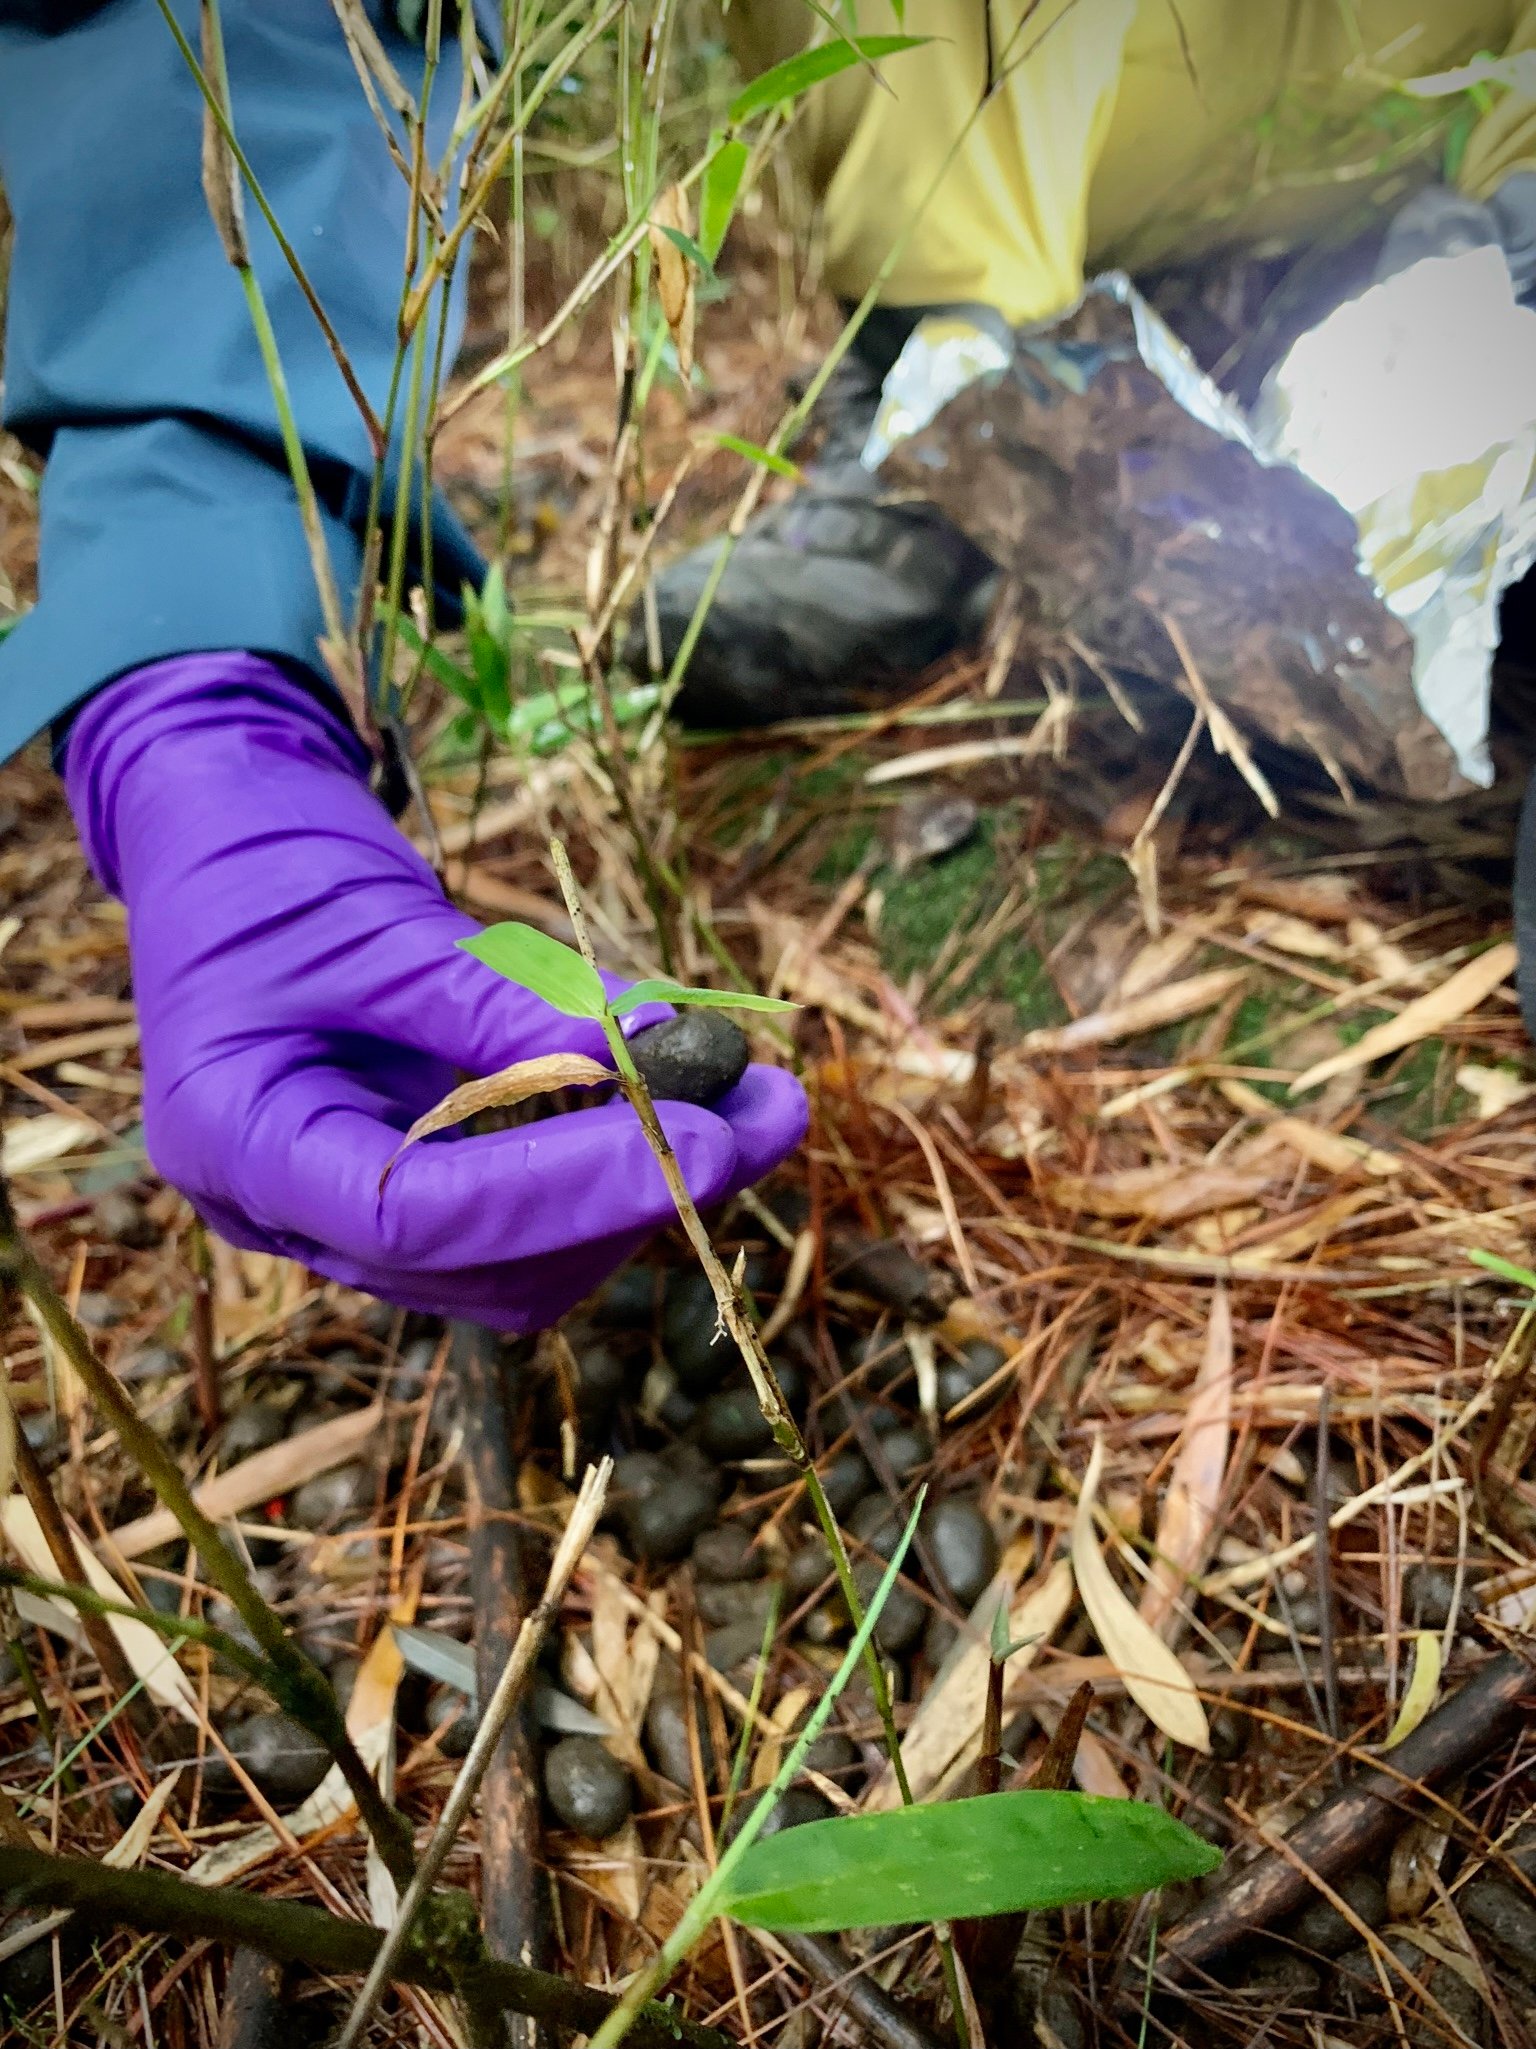 採樣人員戴NBR橡膠手套，採集臺灣水鹿的排遺，其中玉山塔塔加地區出現的排遺樣本中，超過30%含有微塑膠。